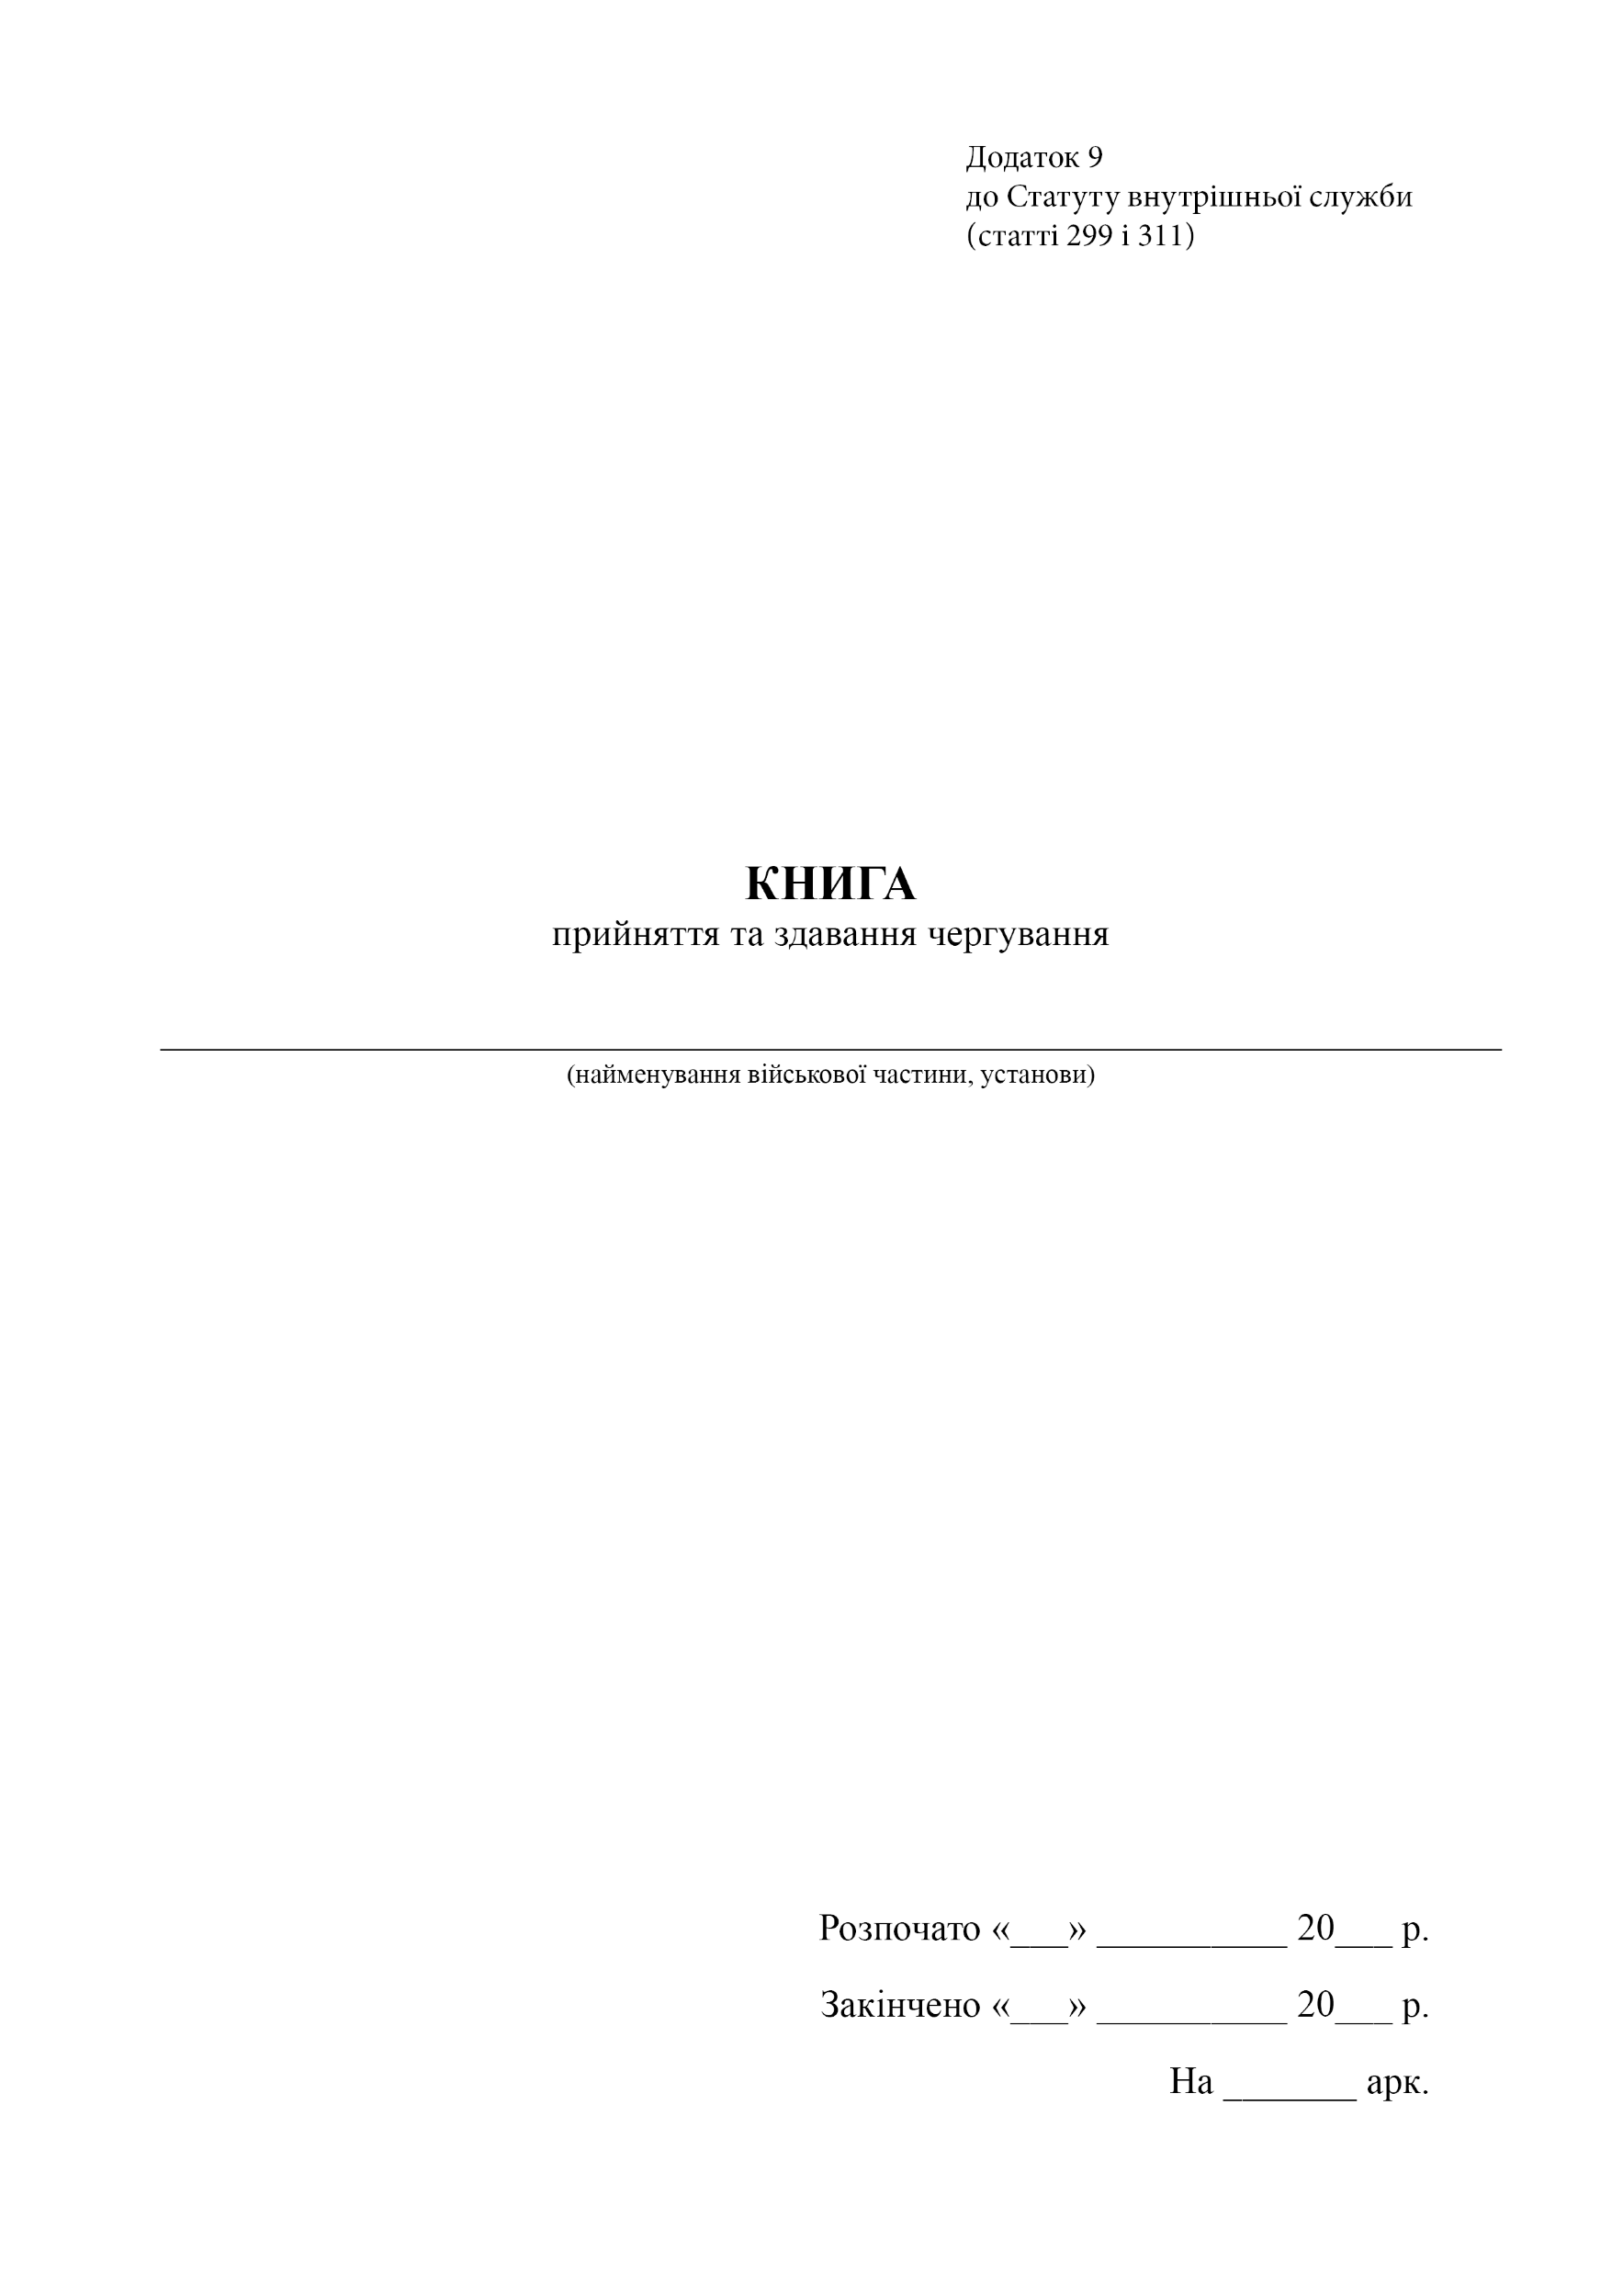 Книга прийняття та здавання чергування, додаток 9. Автор — Верховна Рада України. 